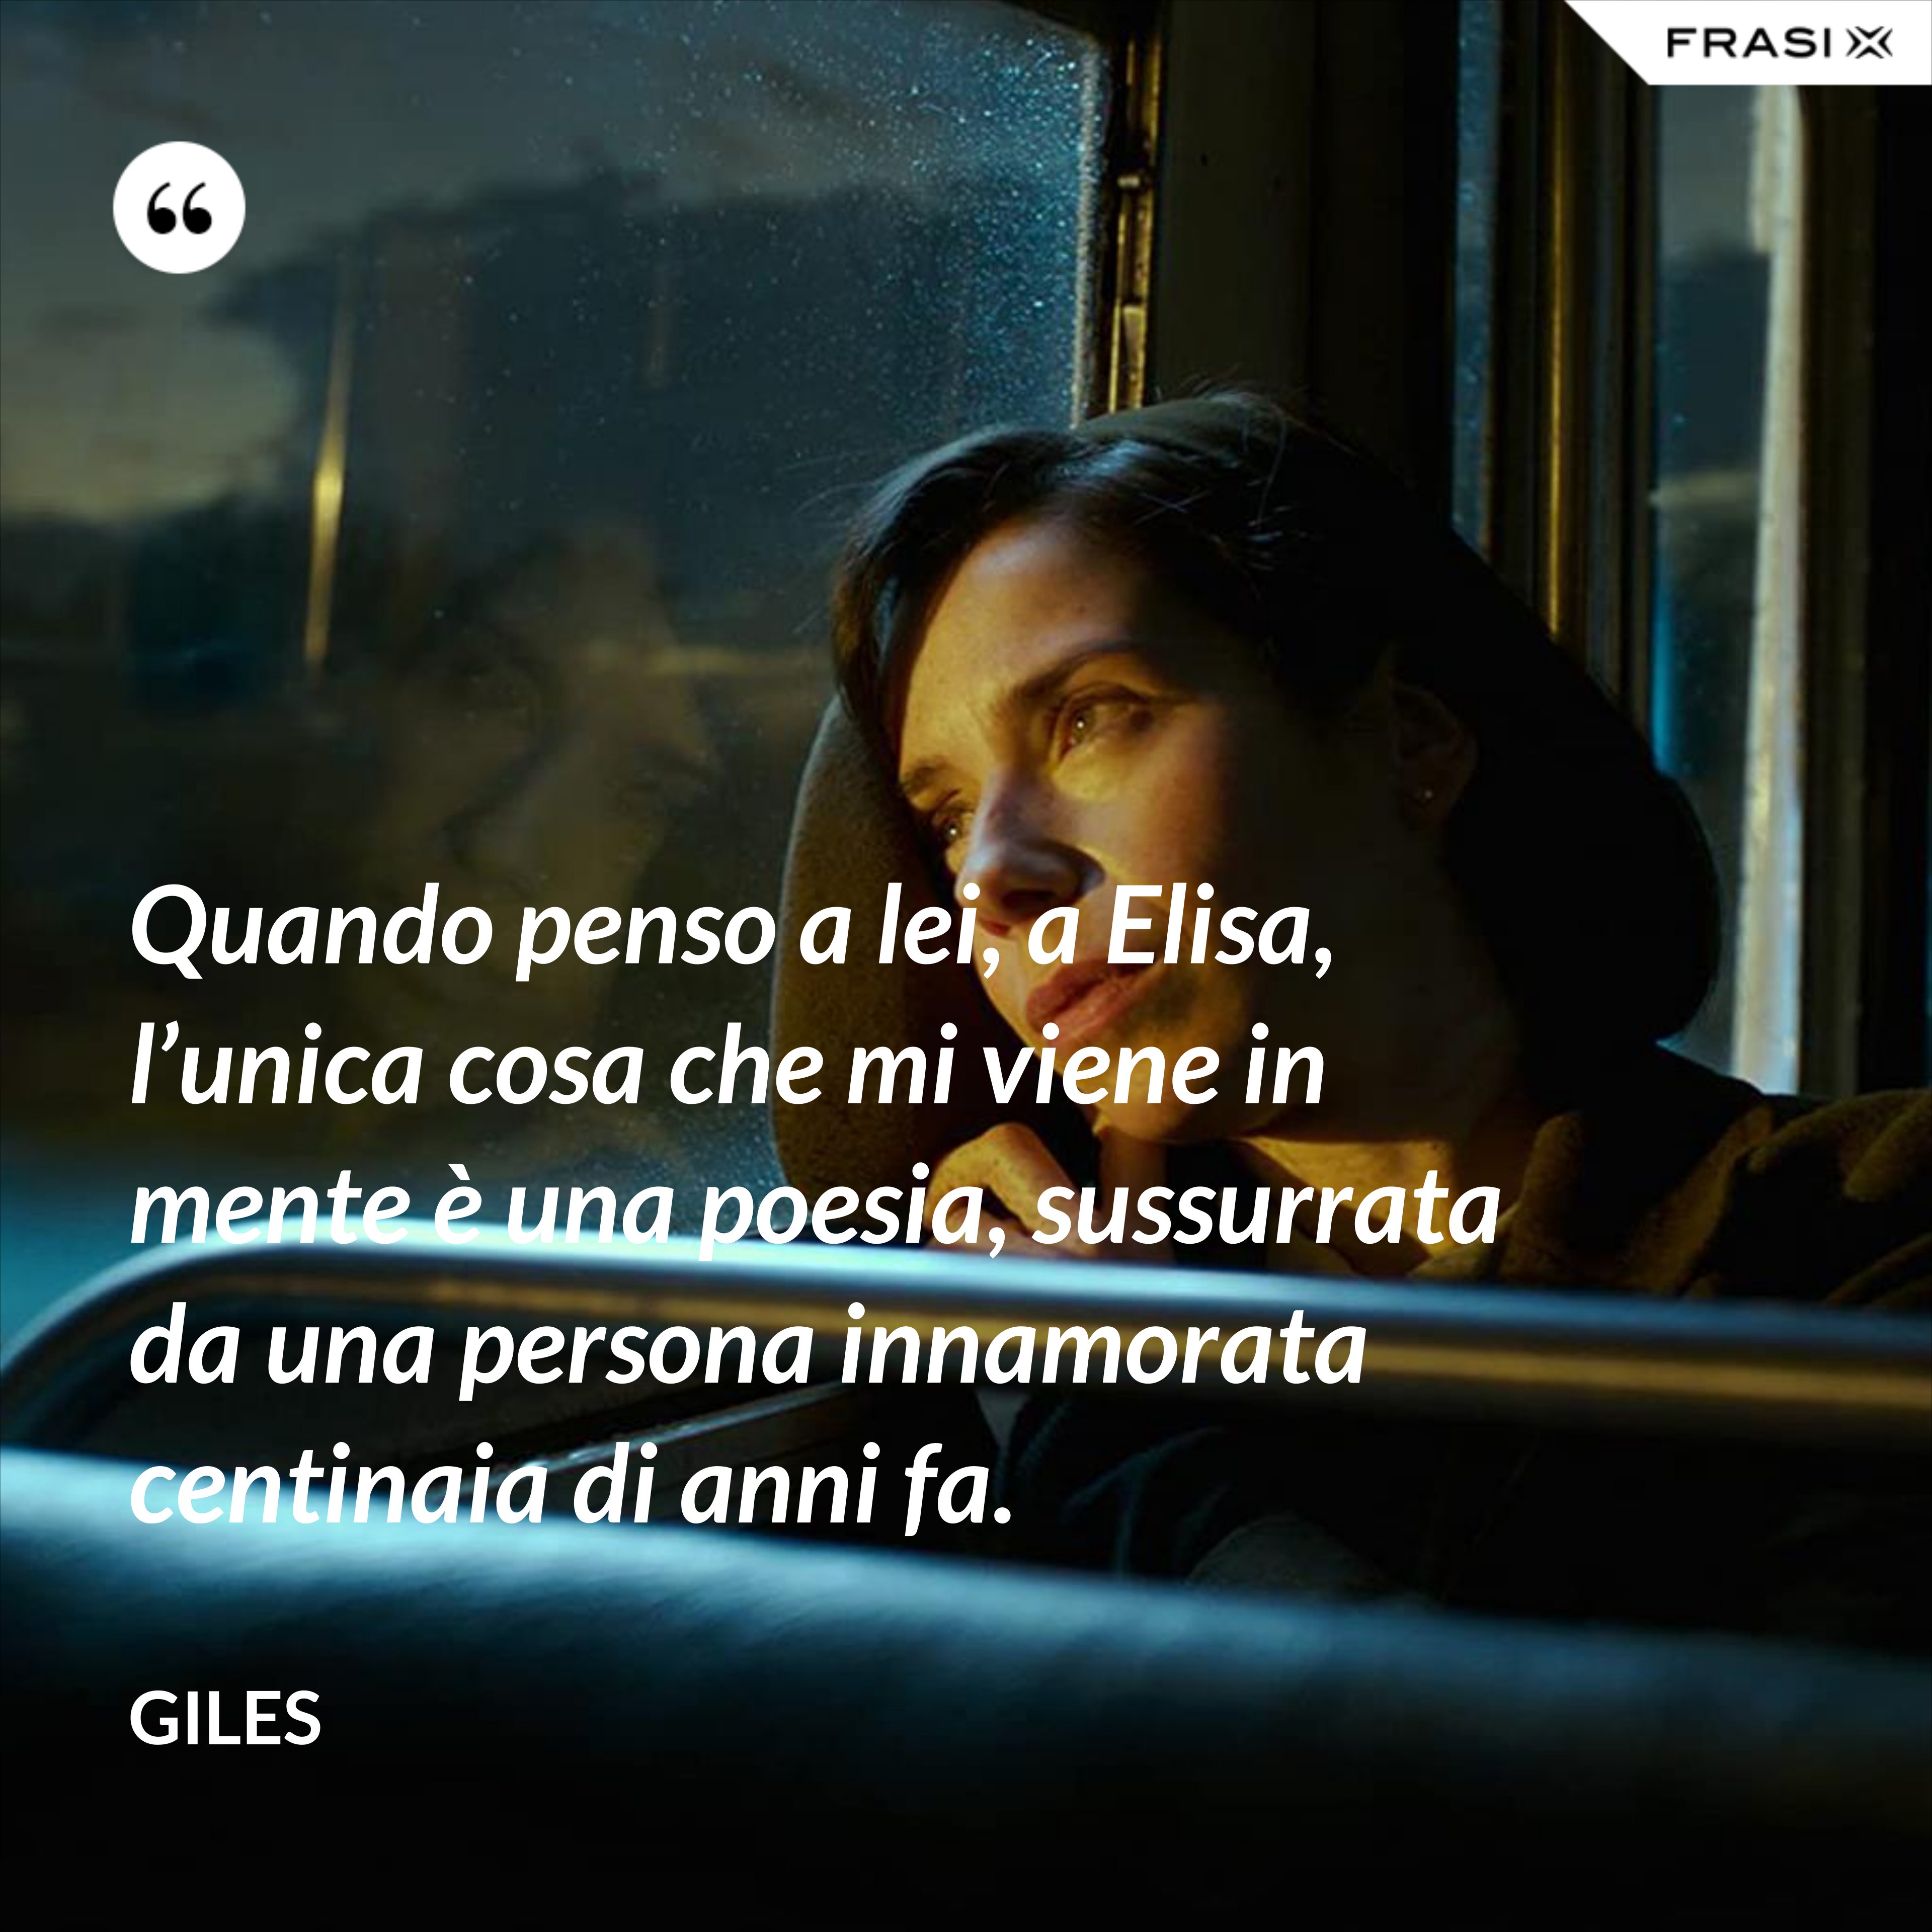 Quando penso a lei, a Elisa, l’unica cosa che mi viene in mente è una poesia, sussurrata da una persona innamorata centinaia di anni fa. - Giles